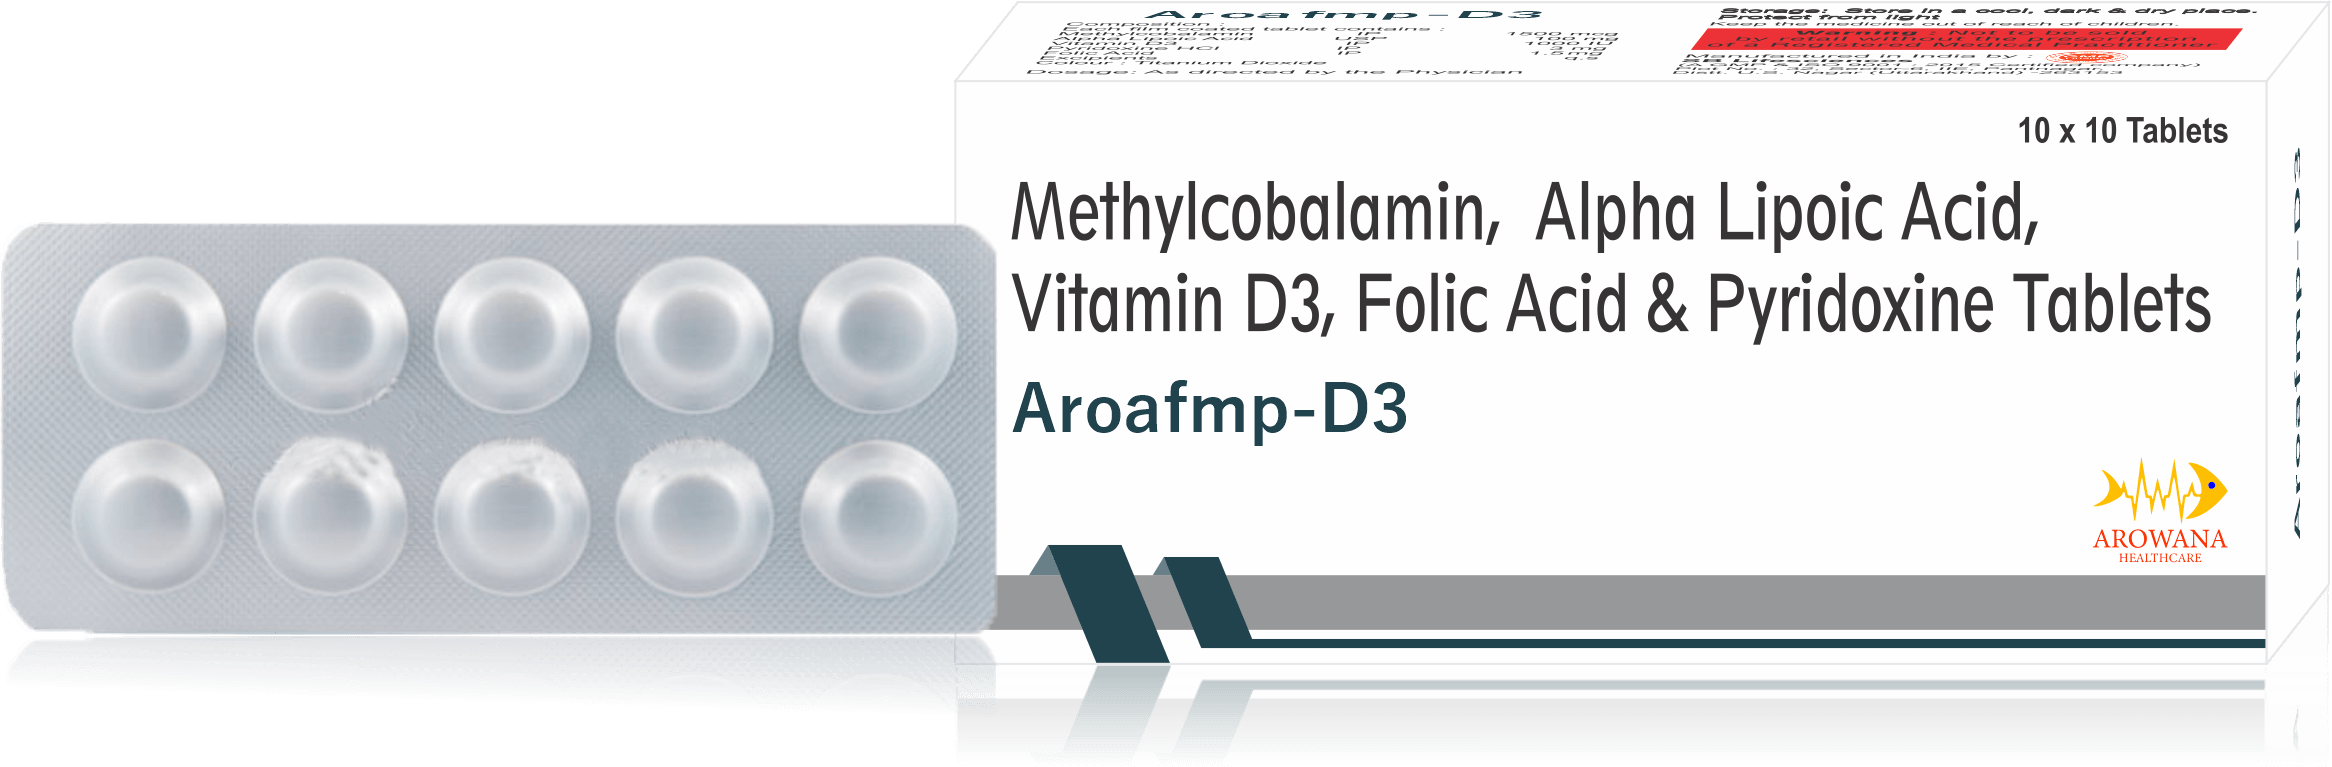 Aroafmp - D3 Tablets